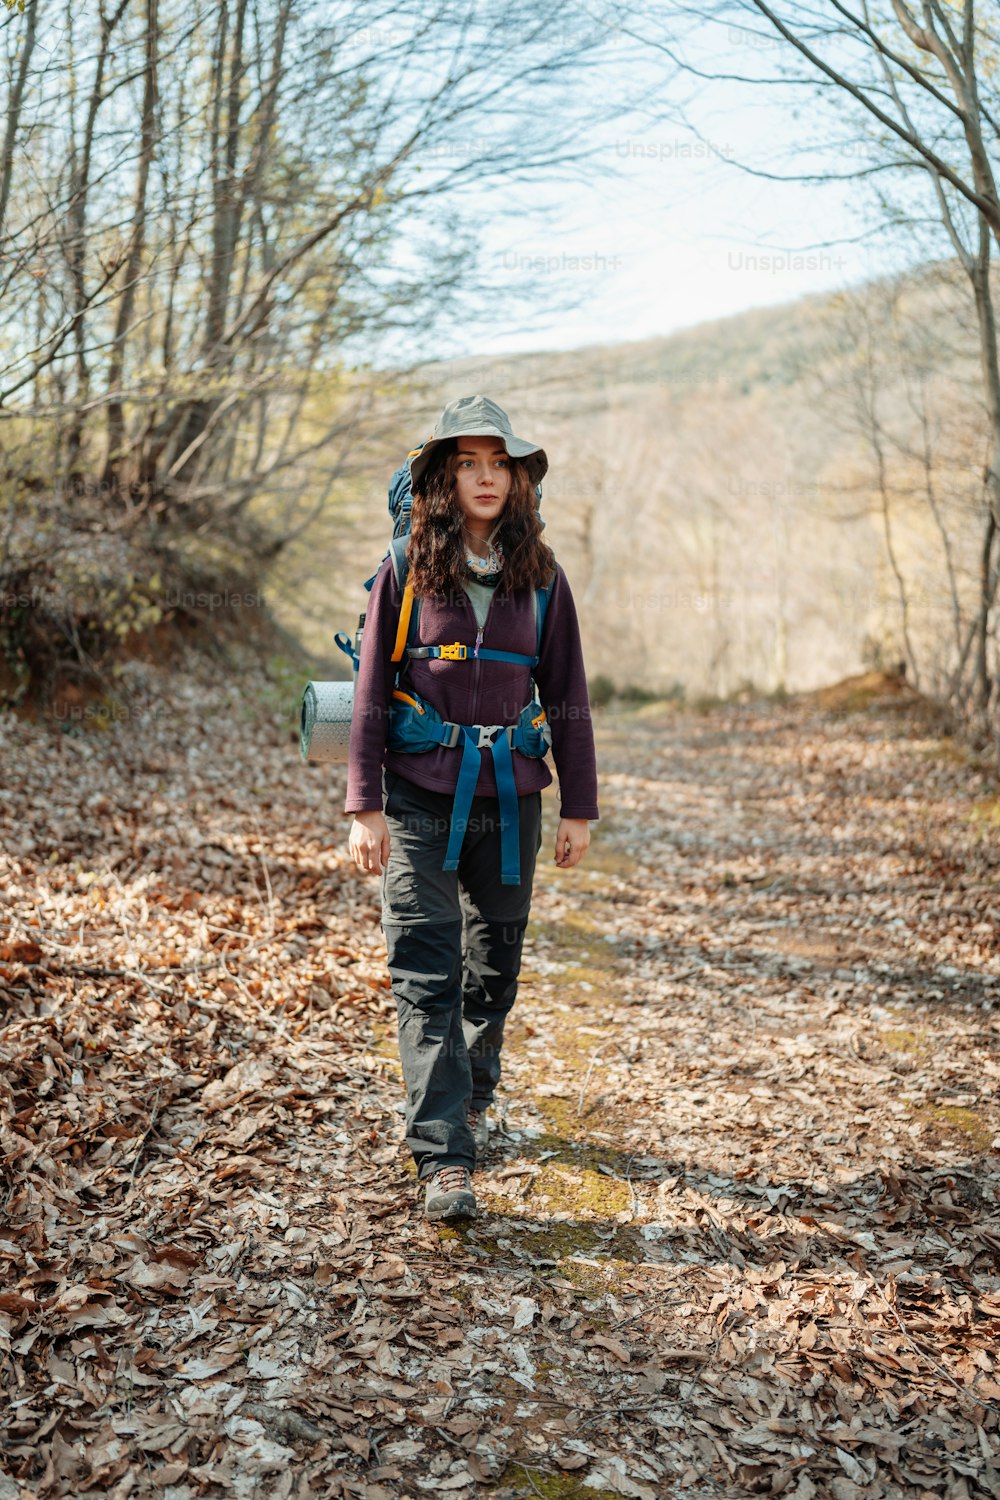 バックパックを持っ�た女性が森の中を歩いている